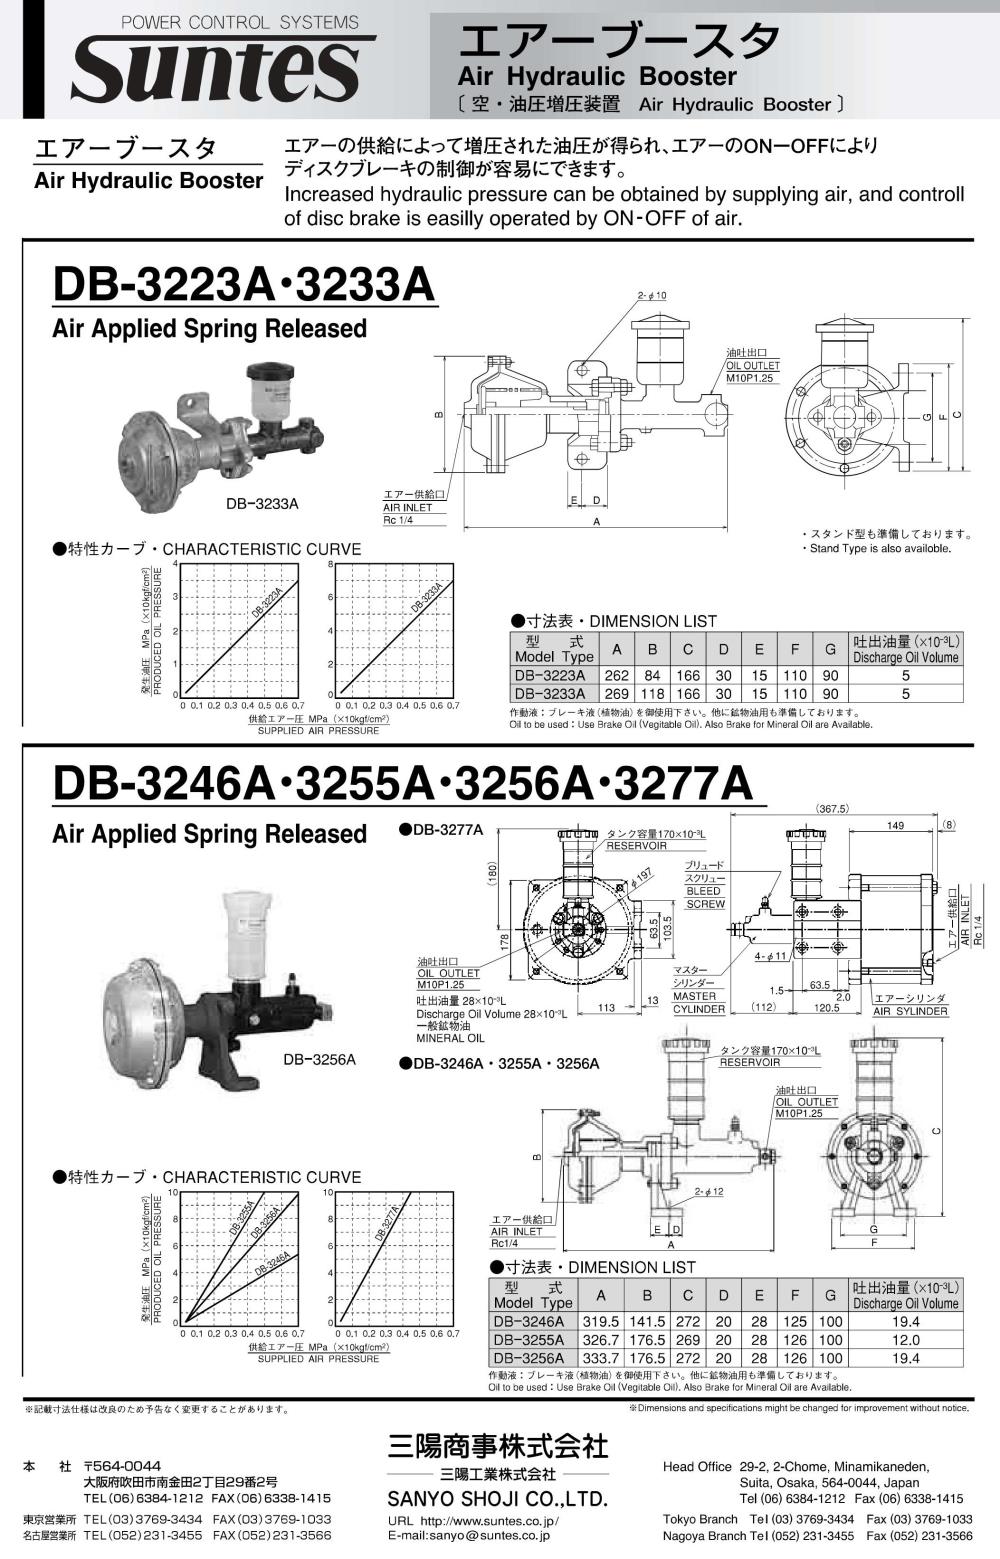 SUNTES Air Hydraulic Booster DB-3223A Series